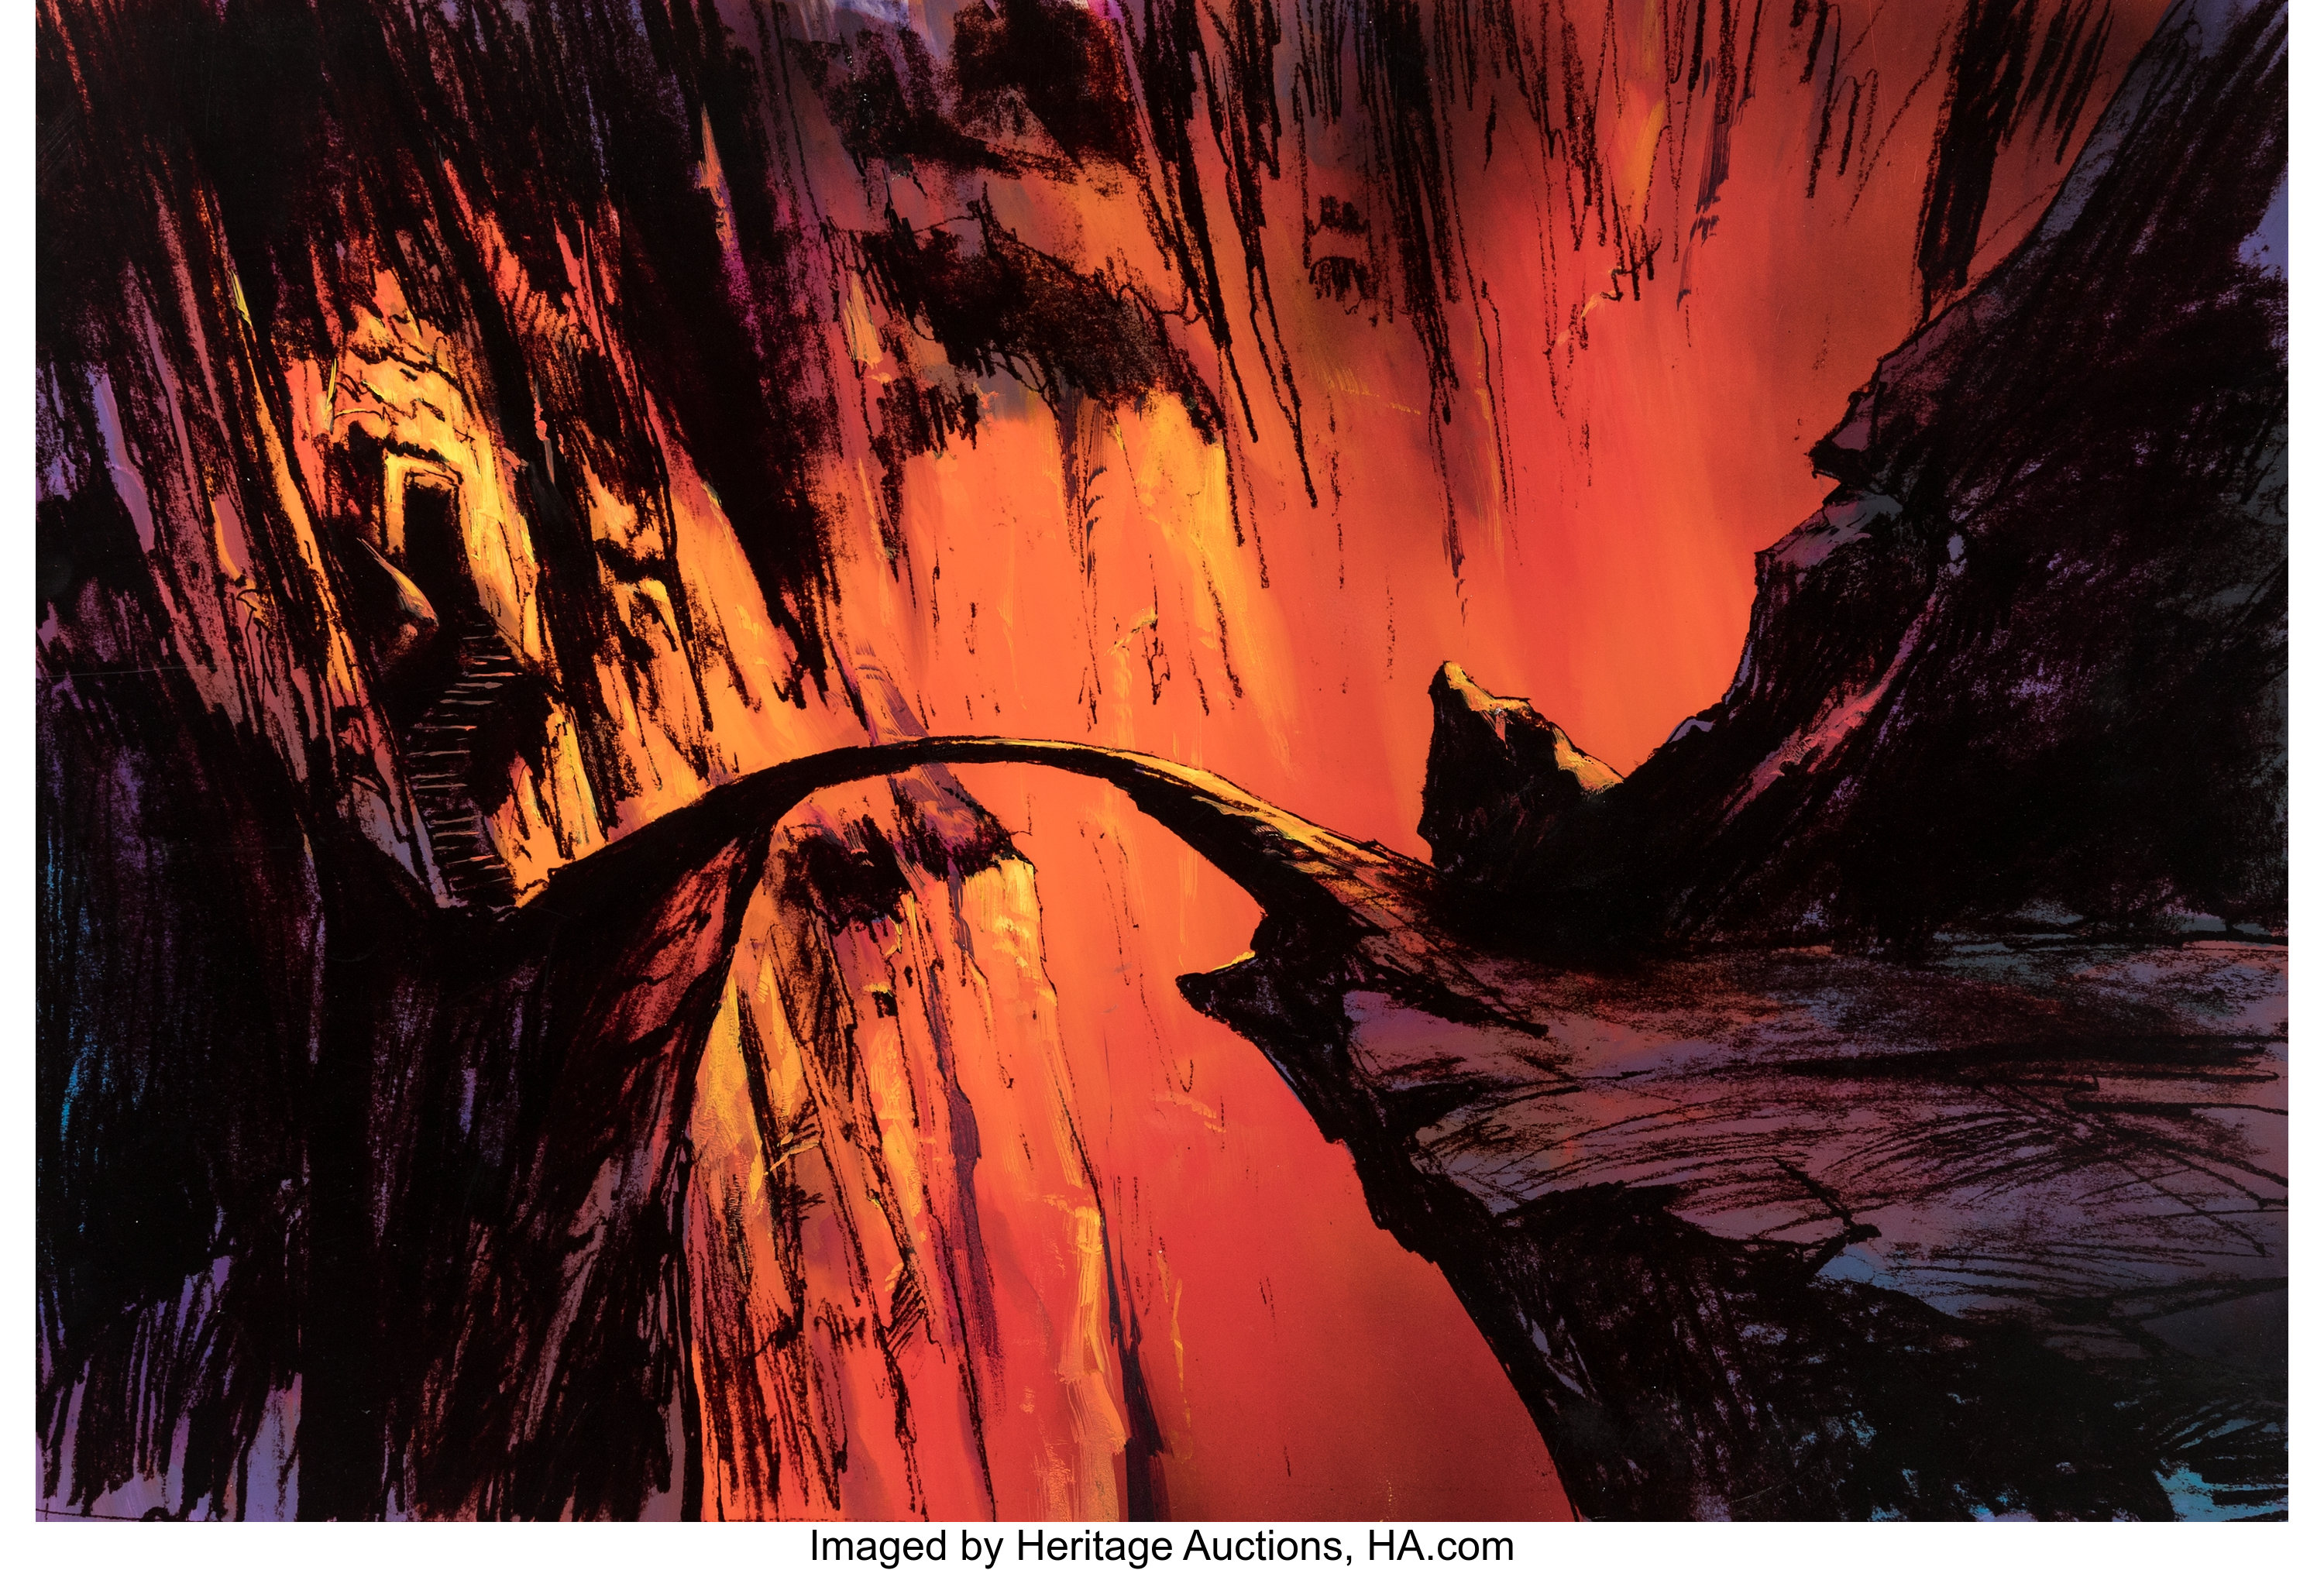 Ralph Bakshi on X: The Bridge of Khazad-dûm background art